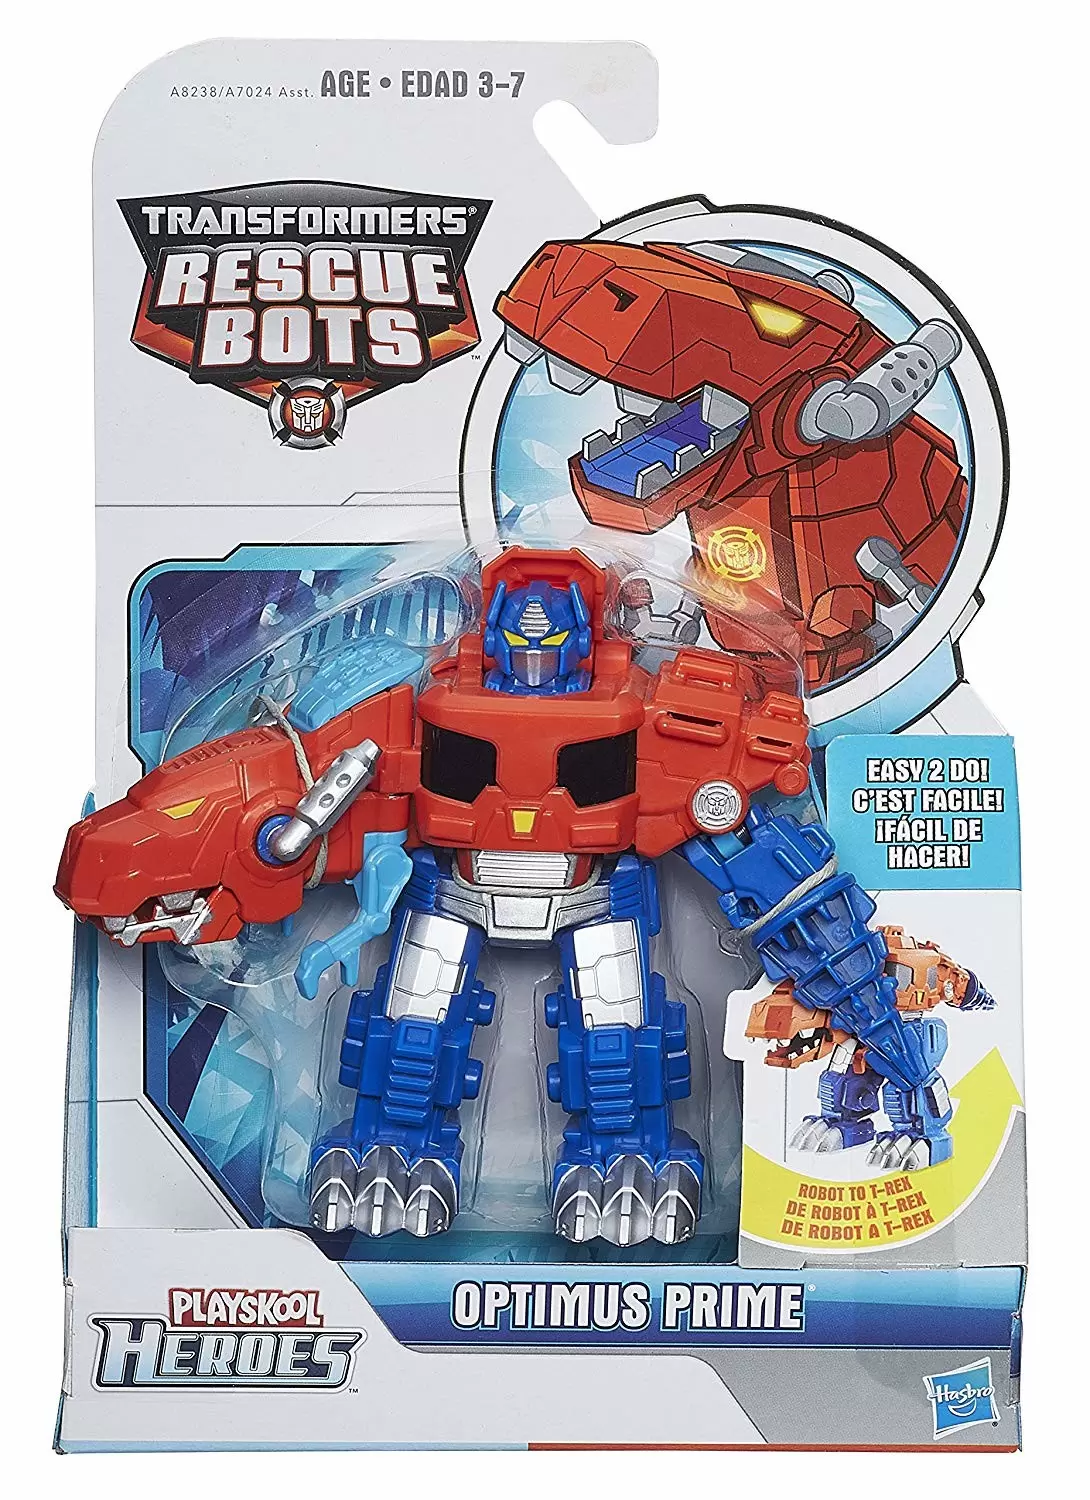 Rescue Bots - Optimus Prime Transformers Rescue Bots action figure